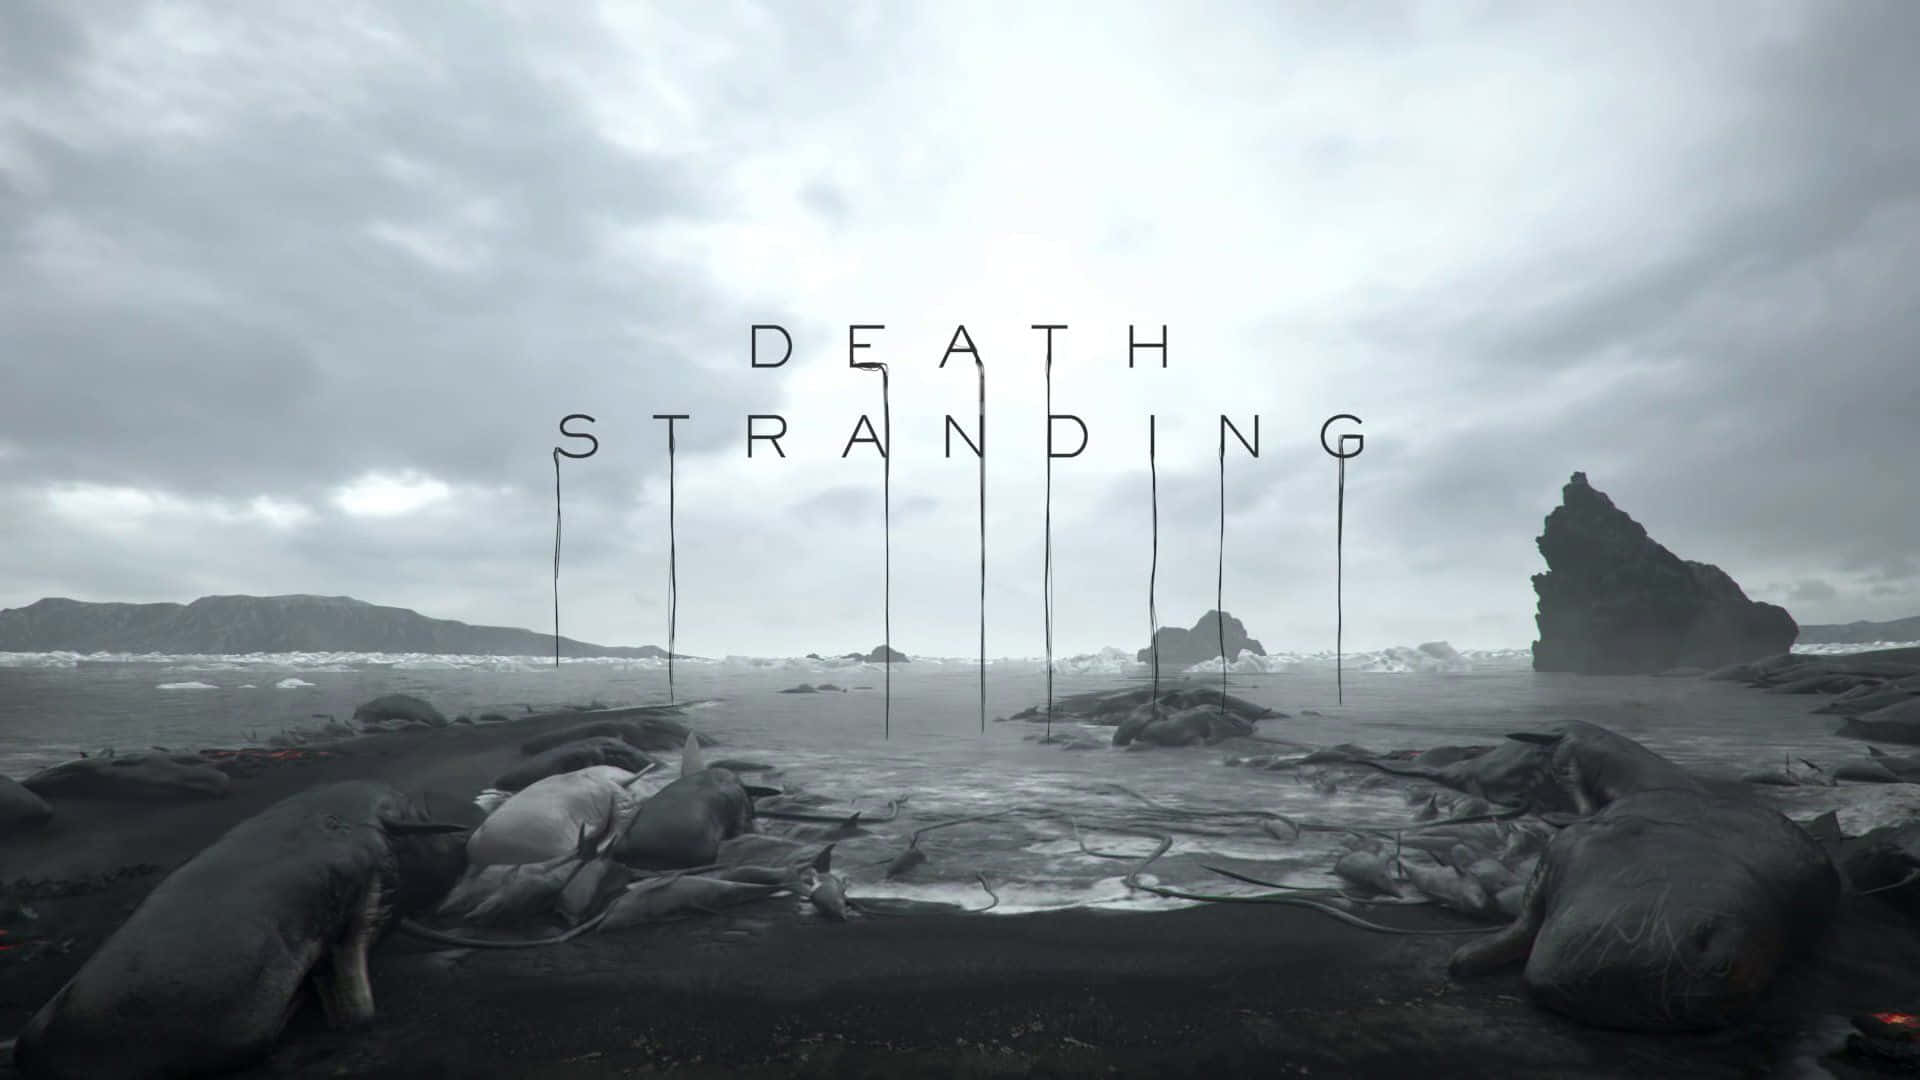 "Explore a Futuristic Landscape in the Video Game 'Death Stranding' Wallpaper